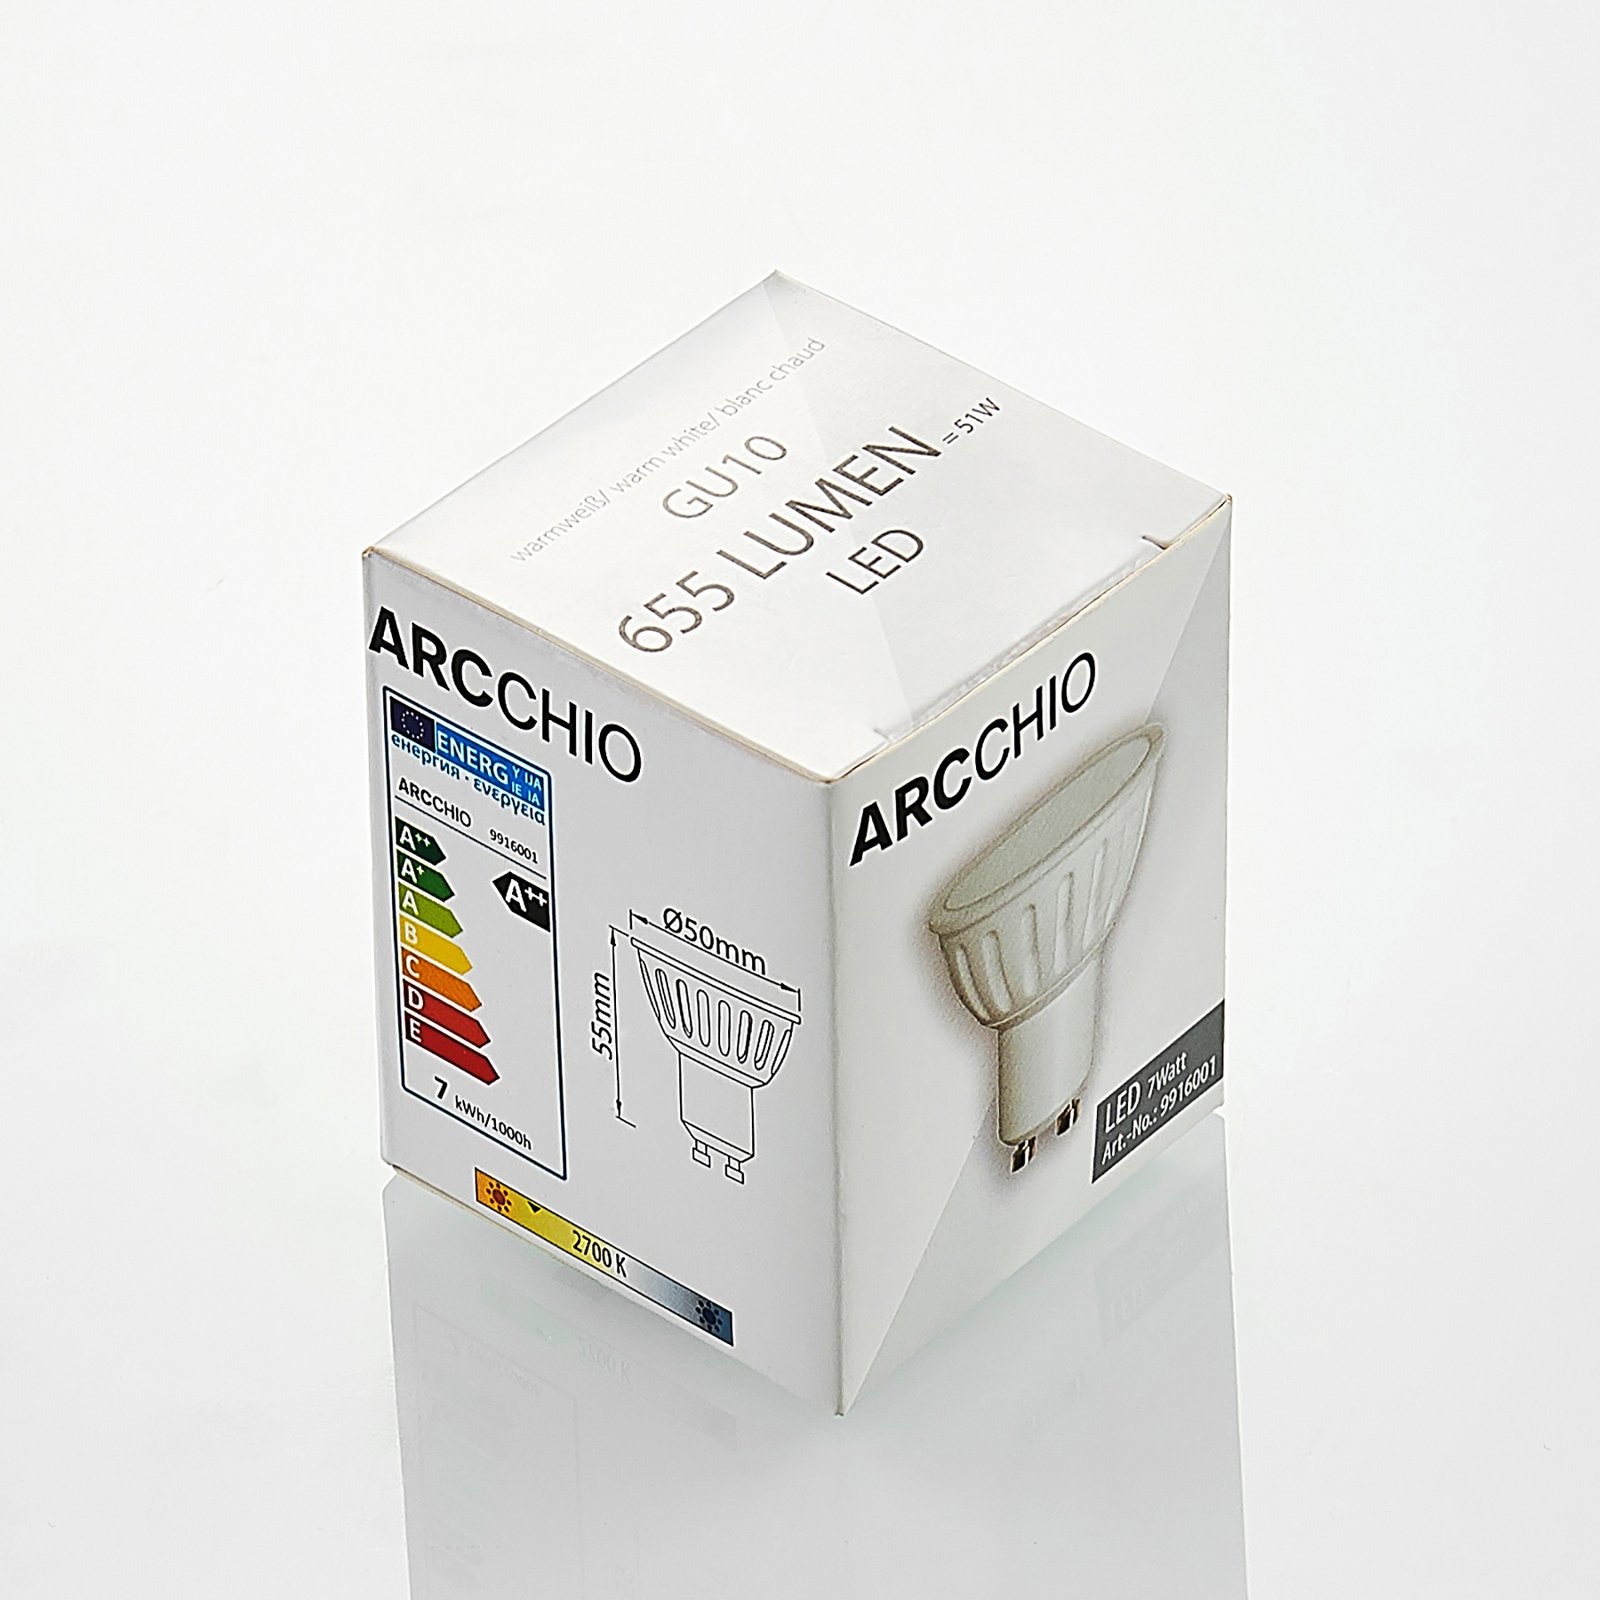 Arcchio reflector LED bulb GU10 100° 5W 2,700K 3x